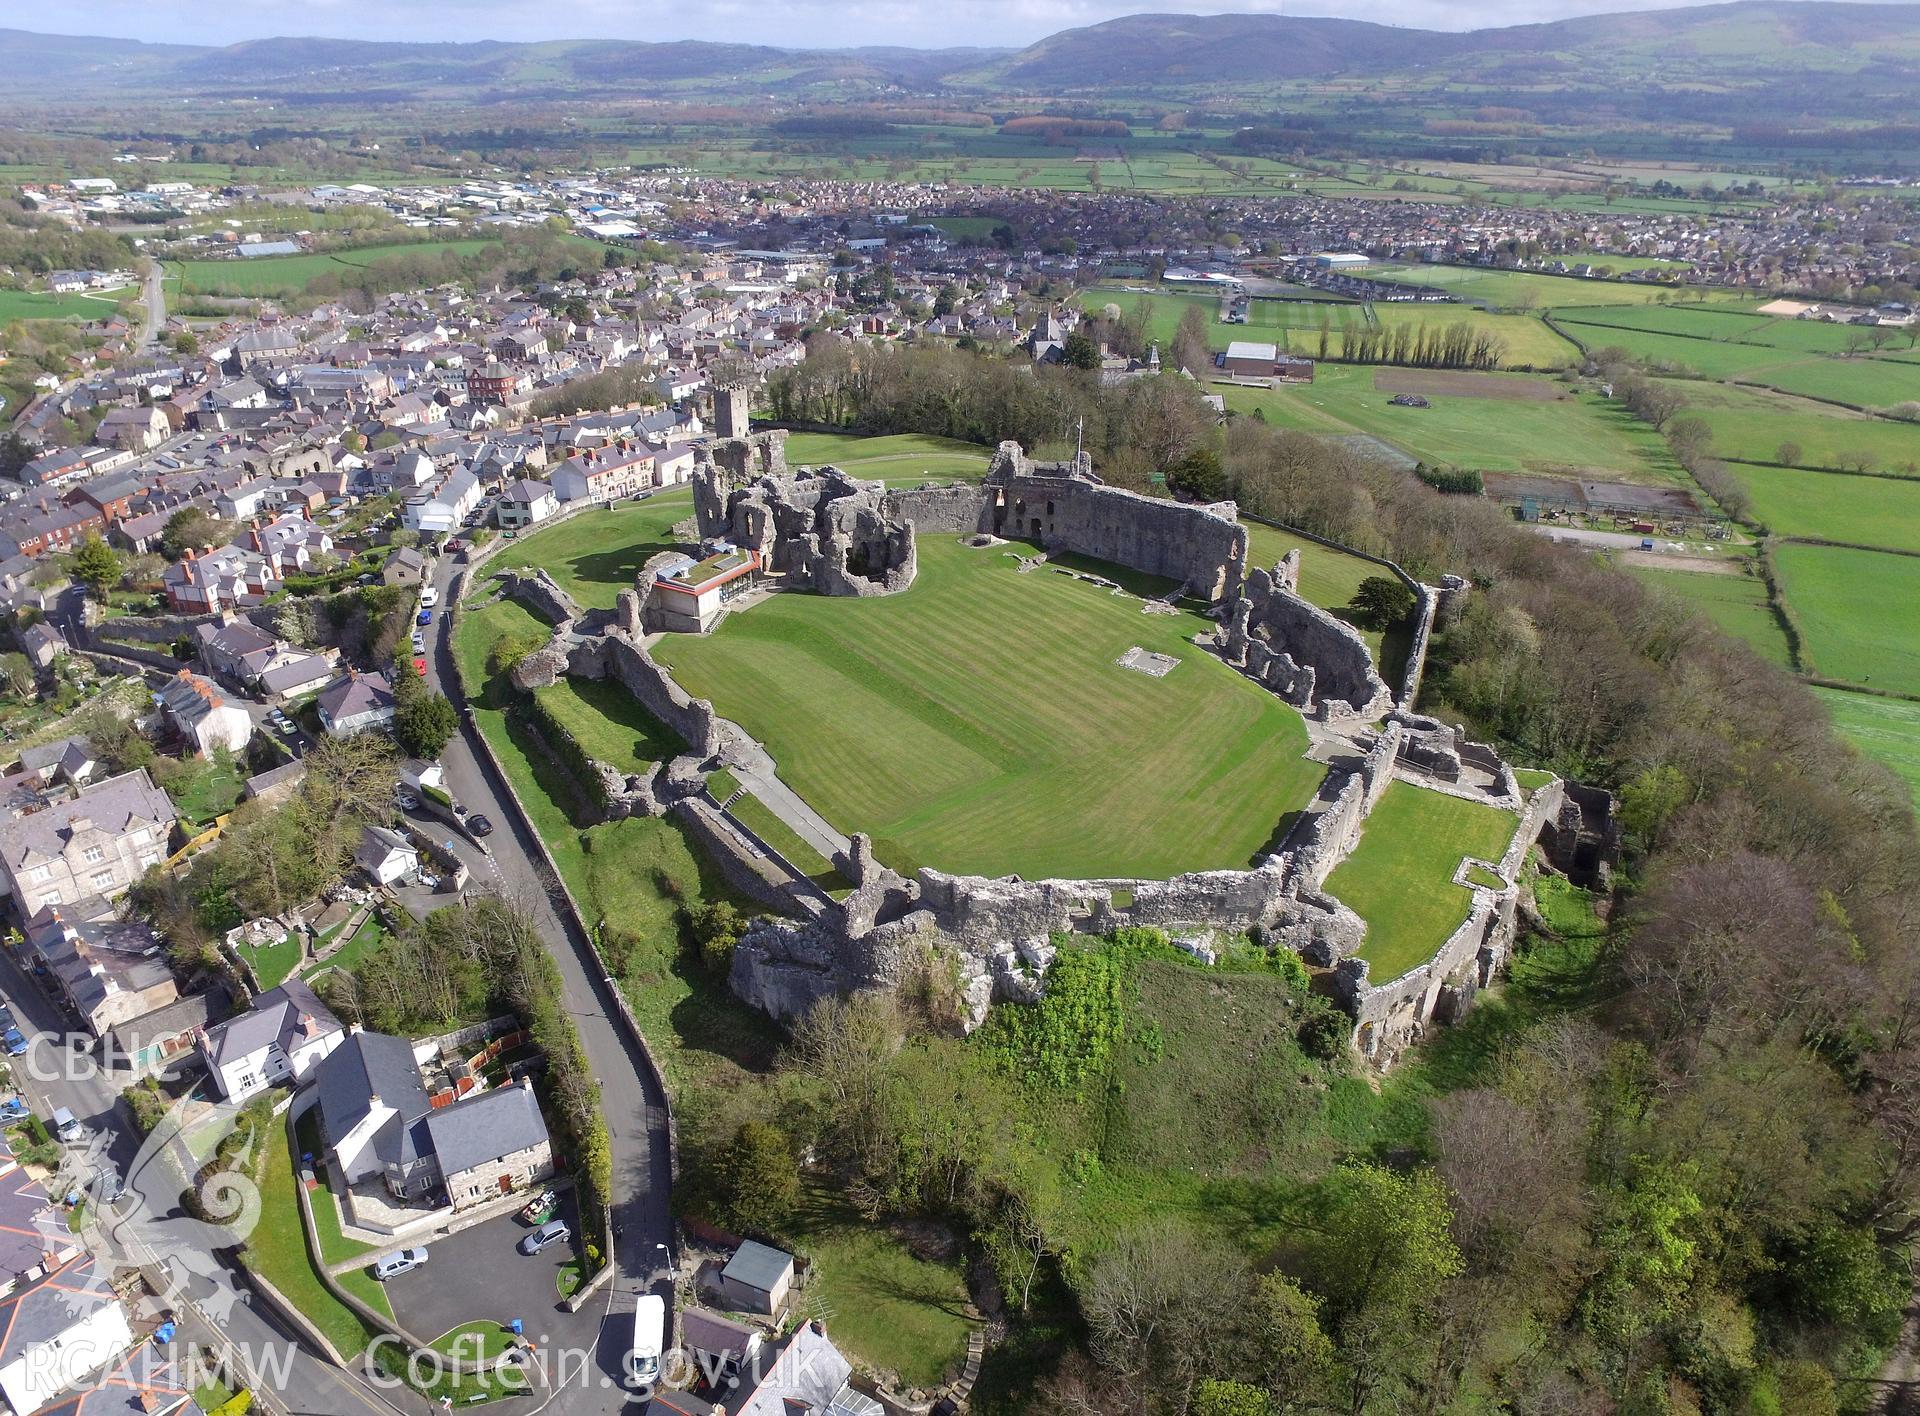 Colour photo showing Denbigh Castle, produced by Paul R. Davis, 10th April 2017.